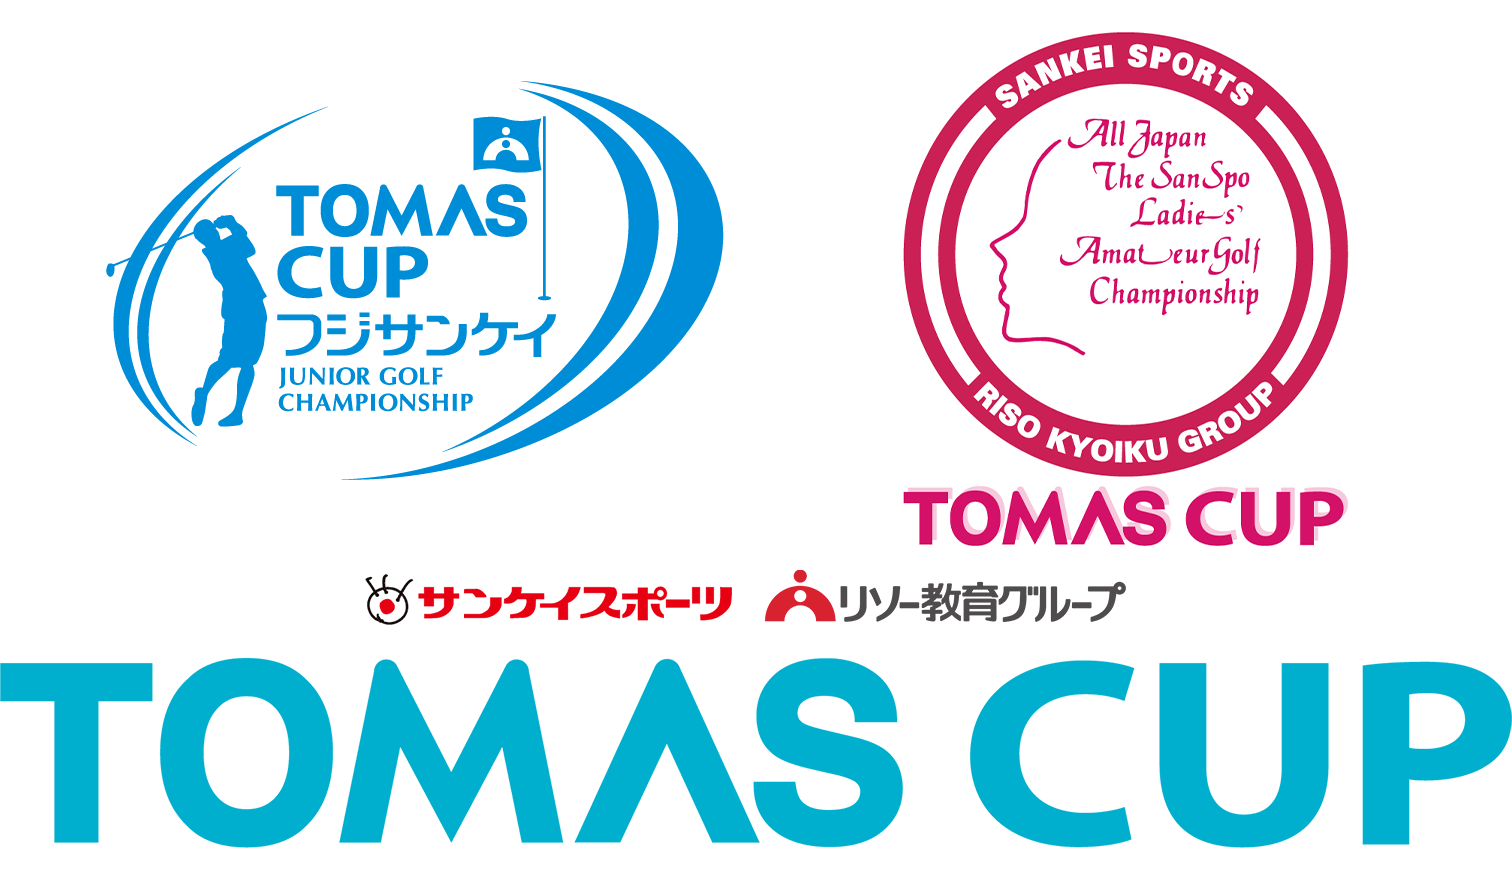 TOMAS CUP ジュニアゴルフ